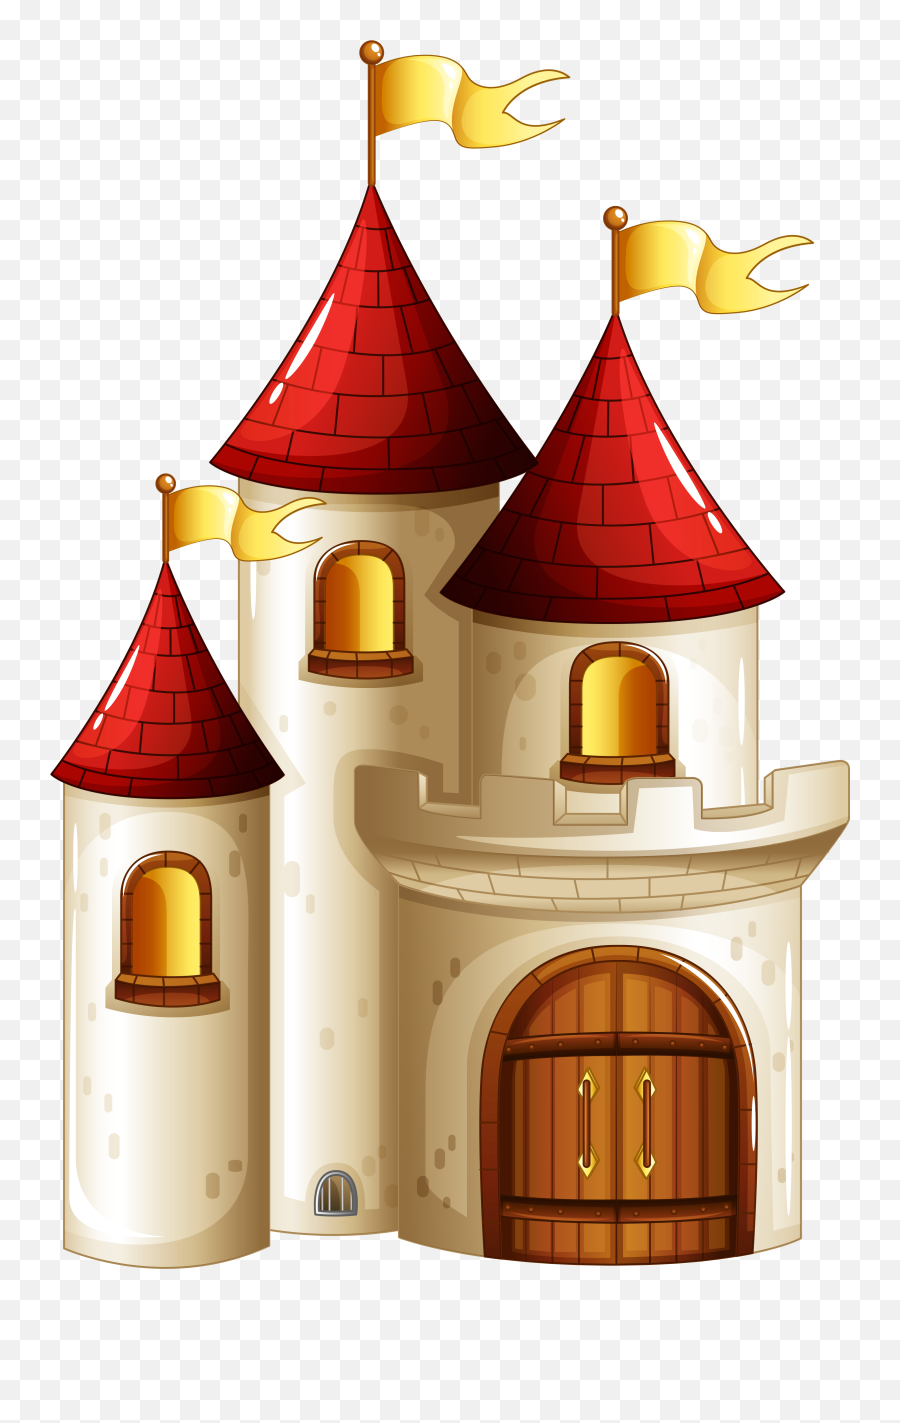 Download Transparent Small Castle Png - Small Castle Clipart,Castle Transparent